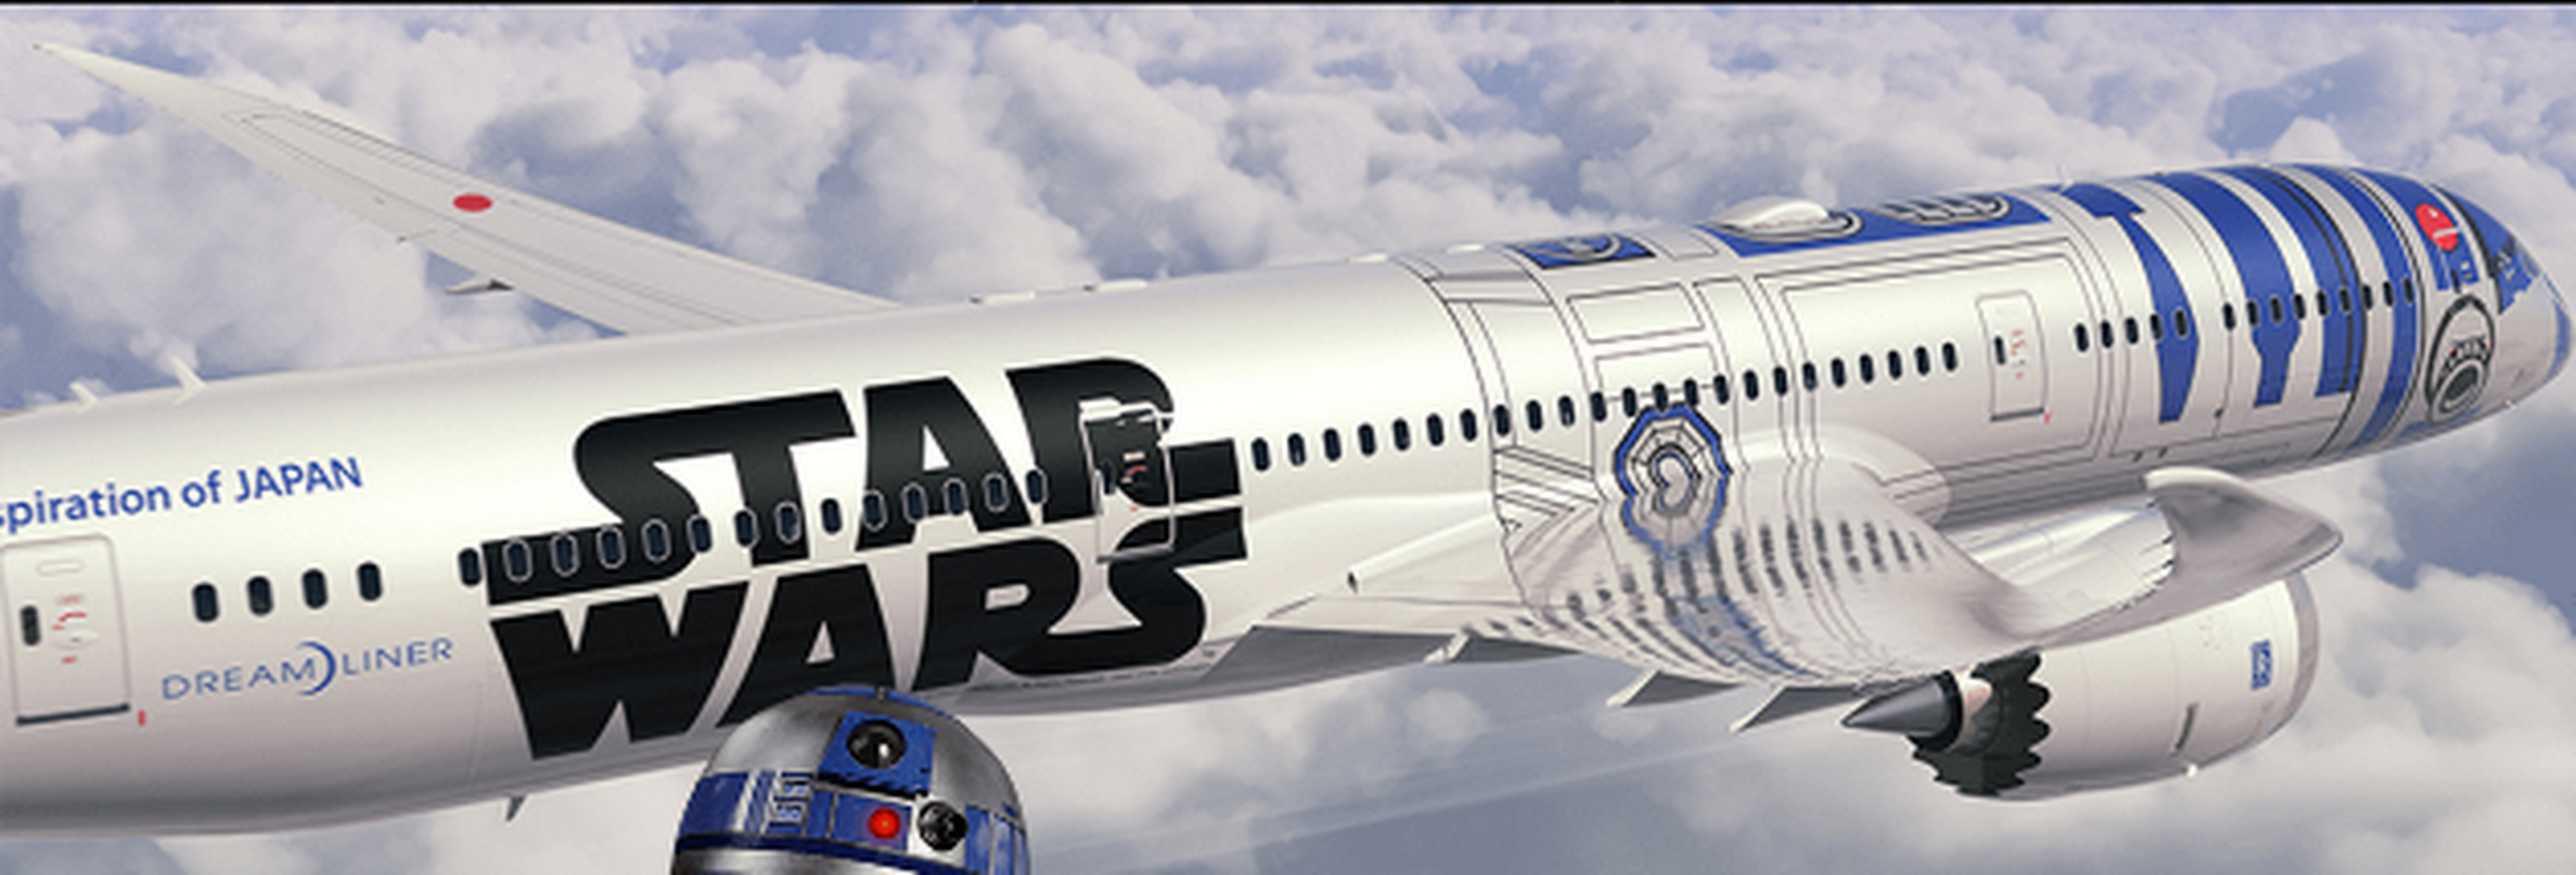 Boeing presenta un avión de Star Wars